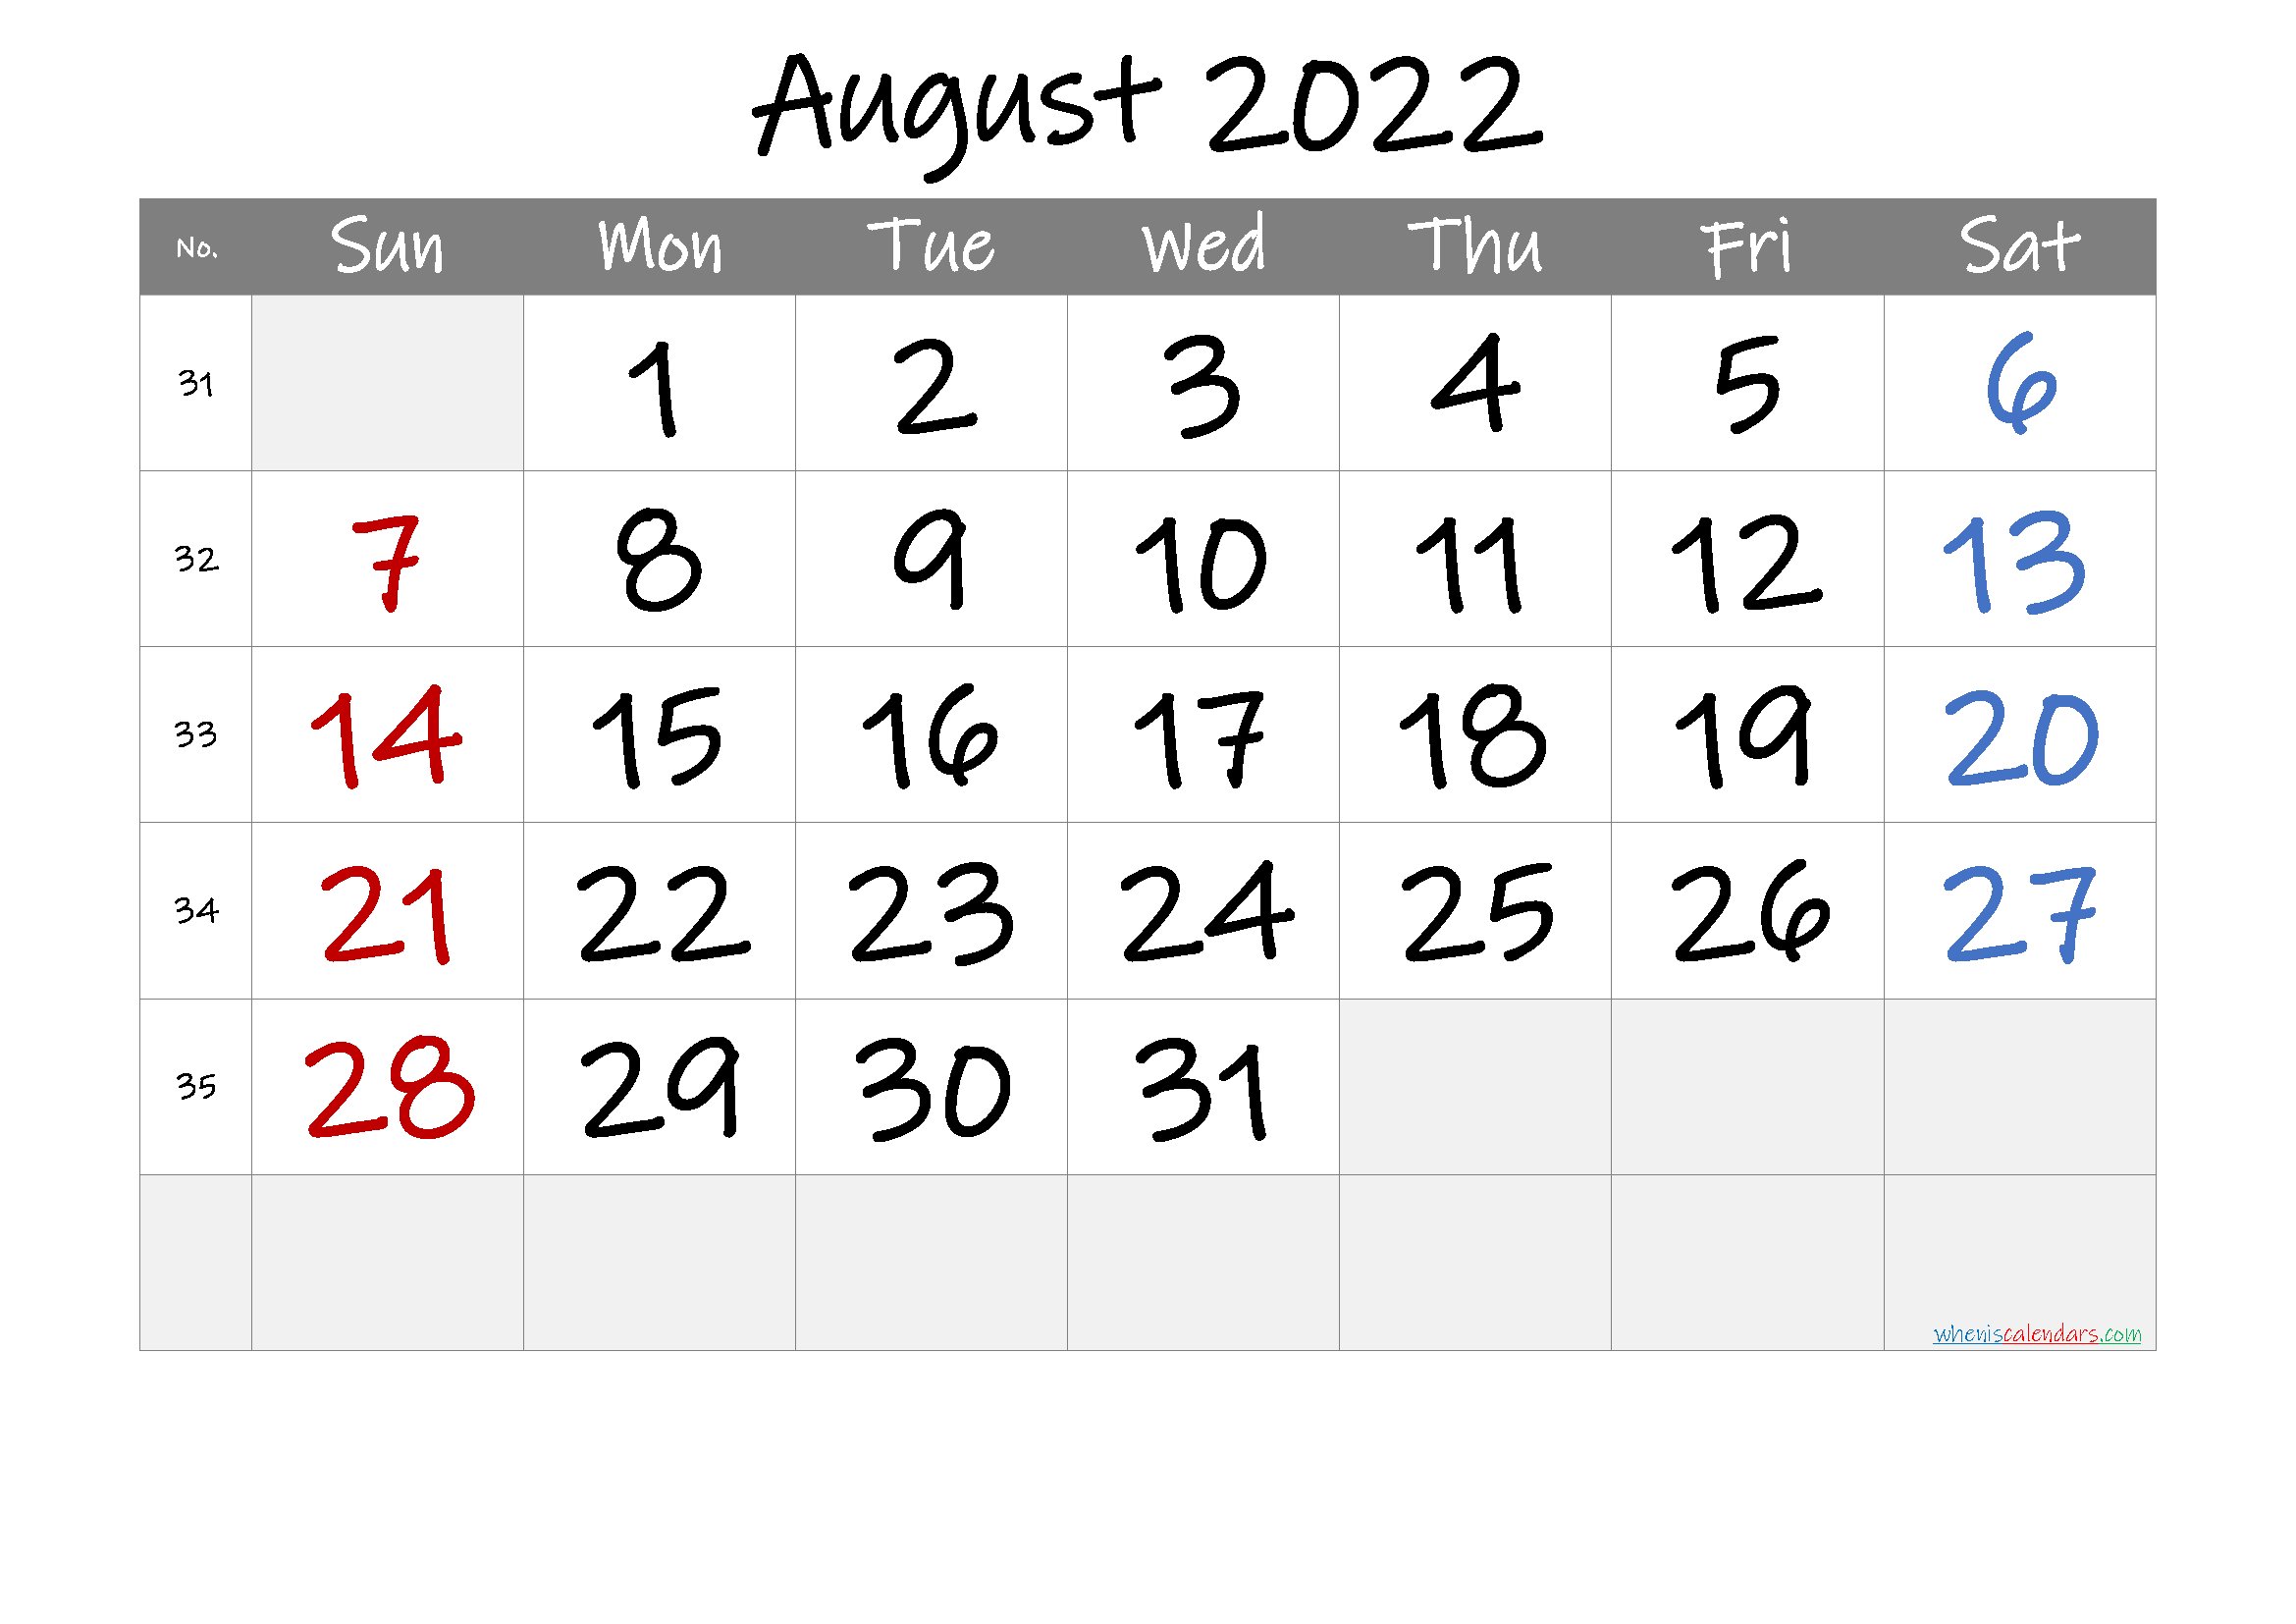 August Calendar 2022  2022 Julian Calendar With Holidays